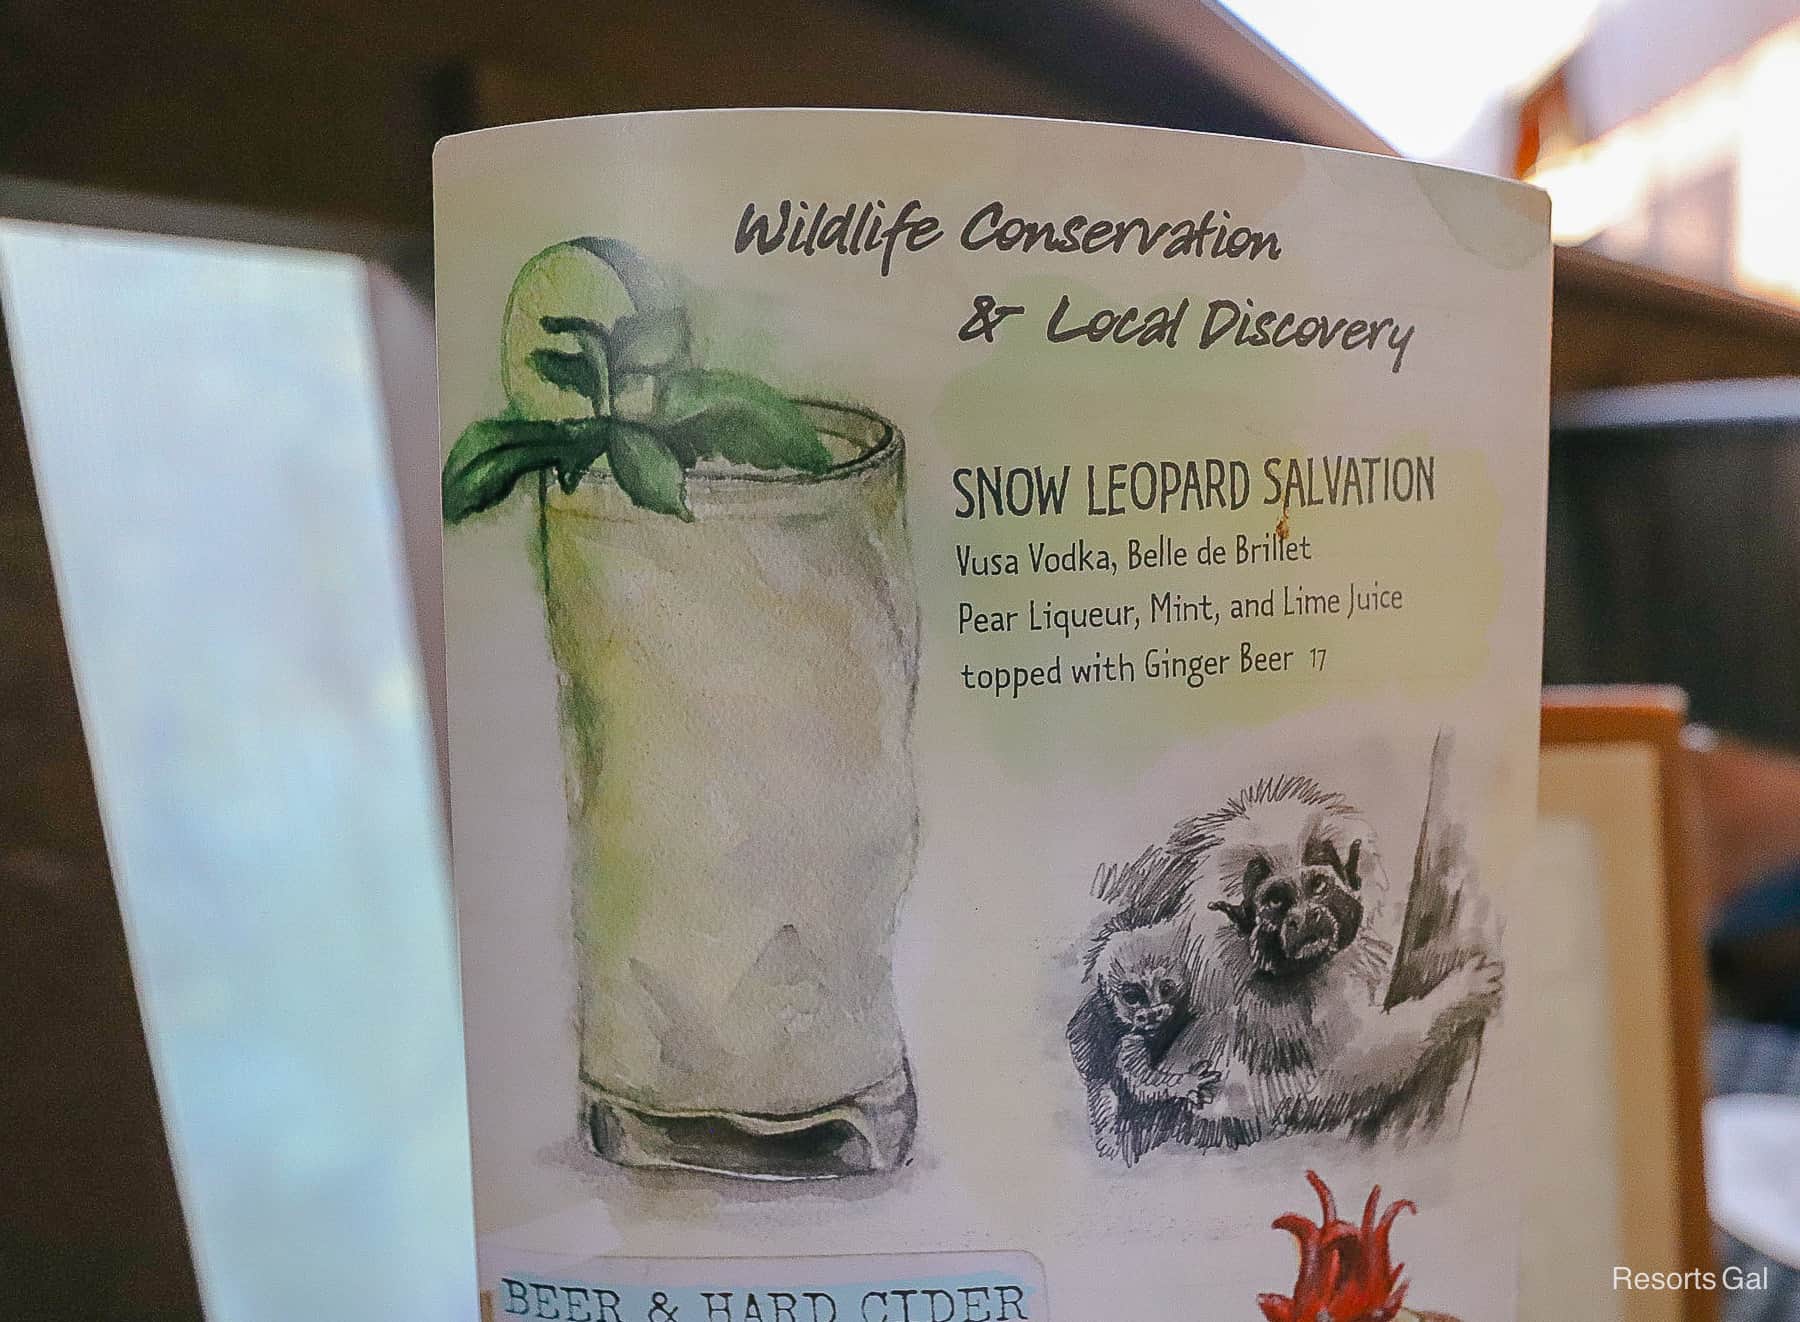 a description of the Snow Leopard Salvation on a menu 